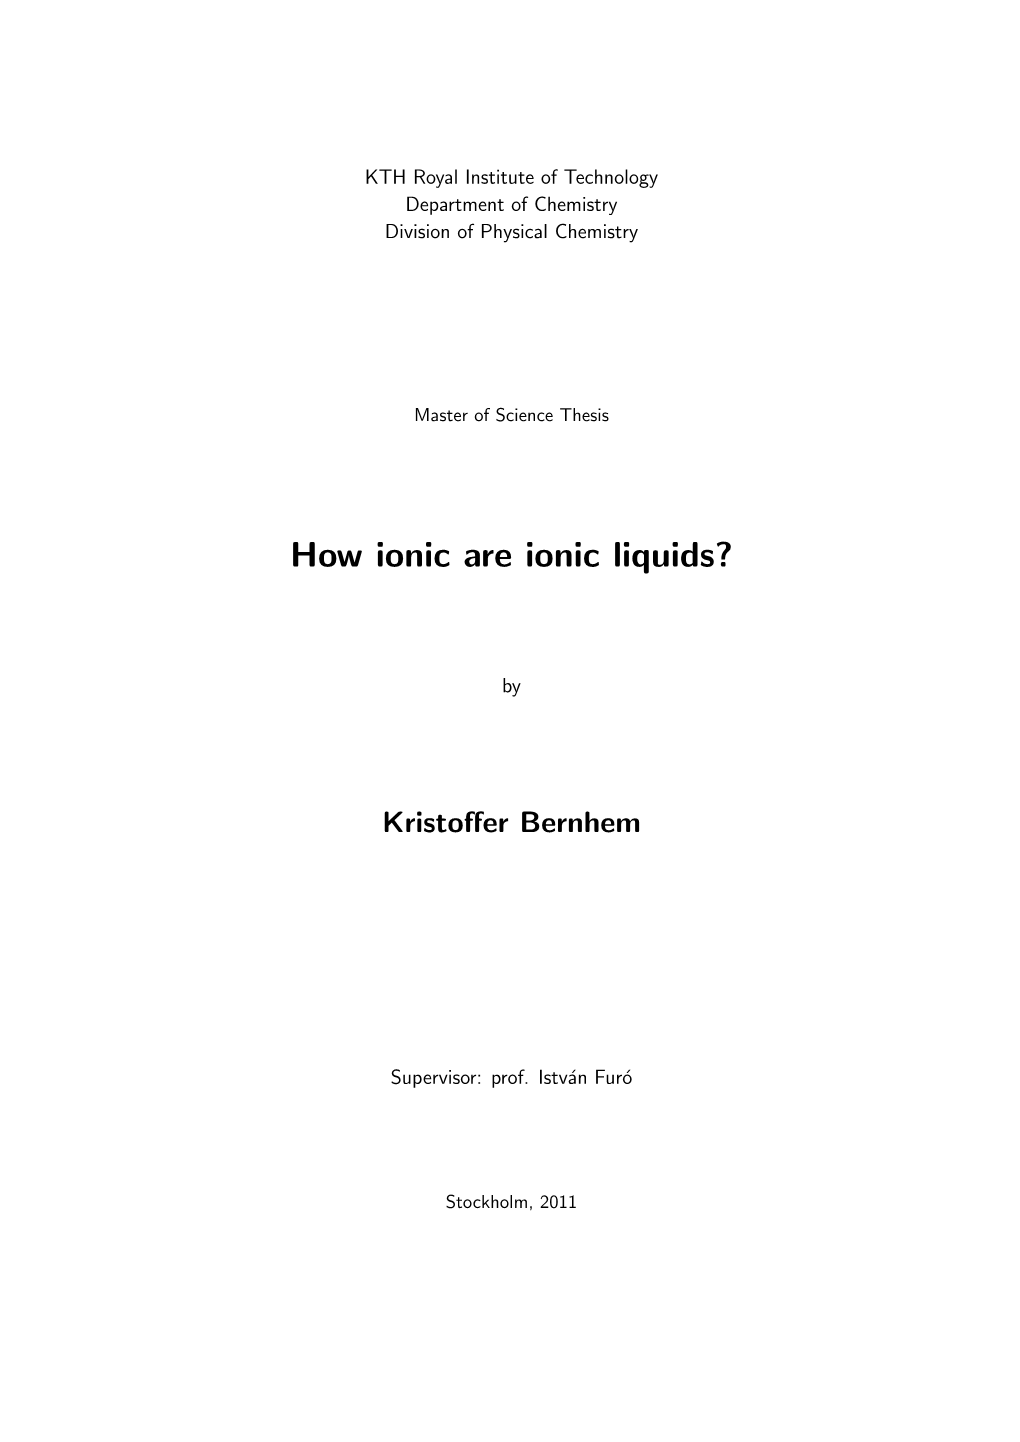 How Ionic Are Ionic Liquids?